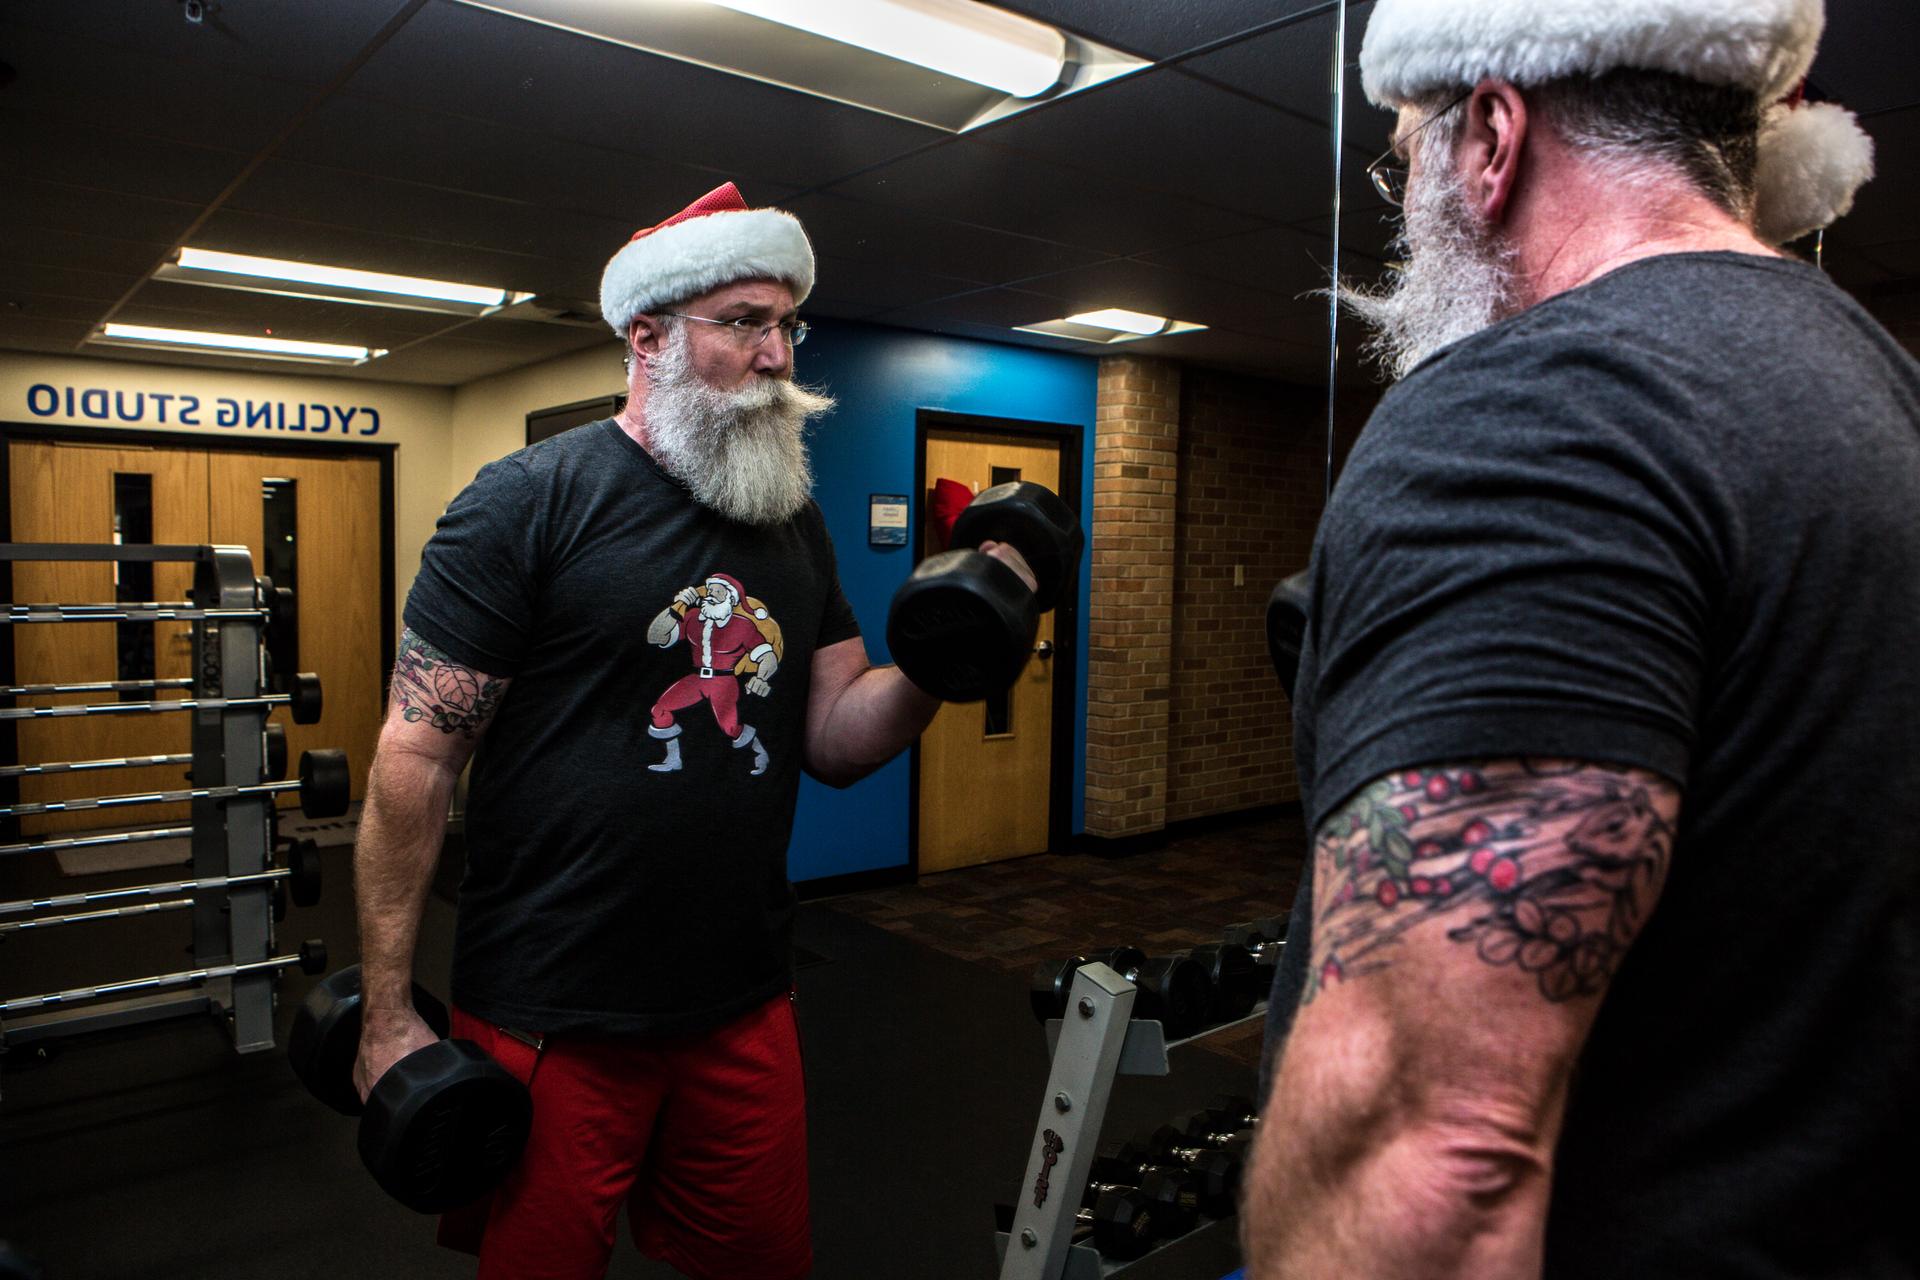 Santa lifts weights